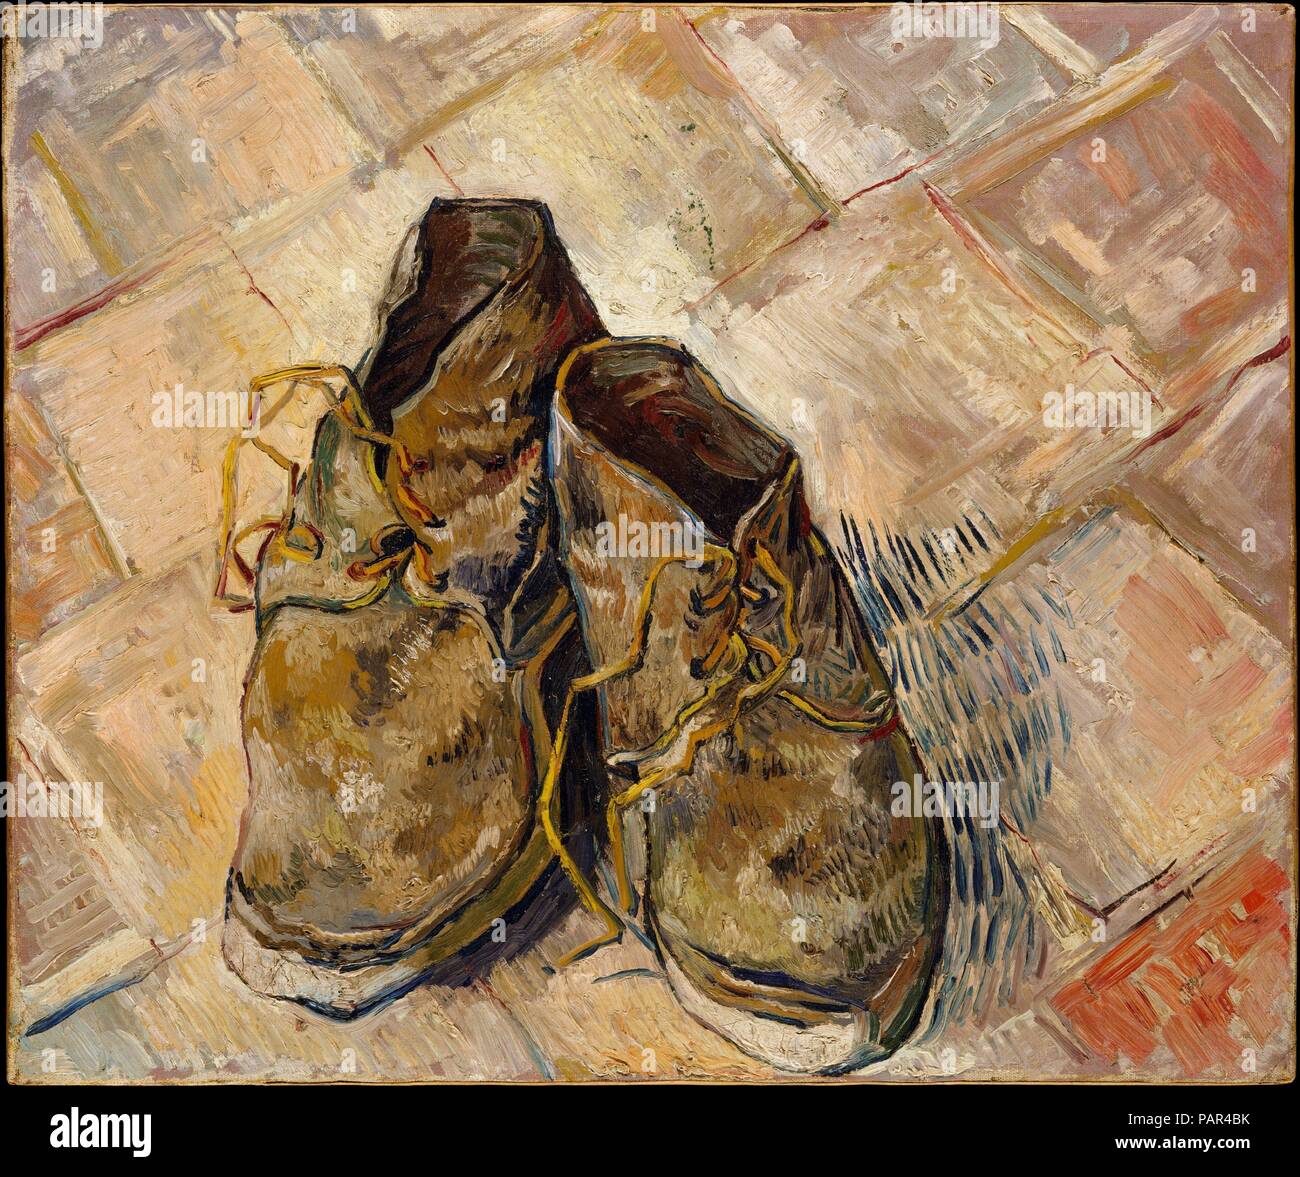 Scarpe. Artista: Vincent van Gogh (Olandese, Zundert 1853-1890 Auvers-sur-Oise). Dimensioni: 18 x 21 3/4 in. (45,7 x 55,2 cm). Data: 1888. Van Gogh dipinto diverse nature morte di scarpe o stivali durante il suo periodo di Parigi. Questa immagine dipinta successivamente in Arles, dimostri un ritorno esclusivo per il motivo precedente. Tuttavia, qui Van Gogh ha messo le scarpe all'interno di uno specifico contesto spaziale: vale a dire, Red-piastrelle del pavimento della casa gialla. Non solo ci si può identificare l'impostazione, ma forse il proprietario delle scarpe come bene. È stato suggerito che questo 'Still vita di vecchi contadini " scarpe possono essere state quelle di Foto Stock